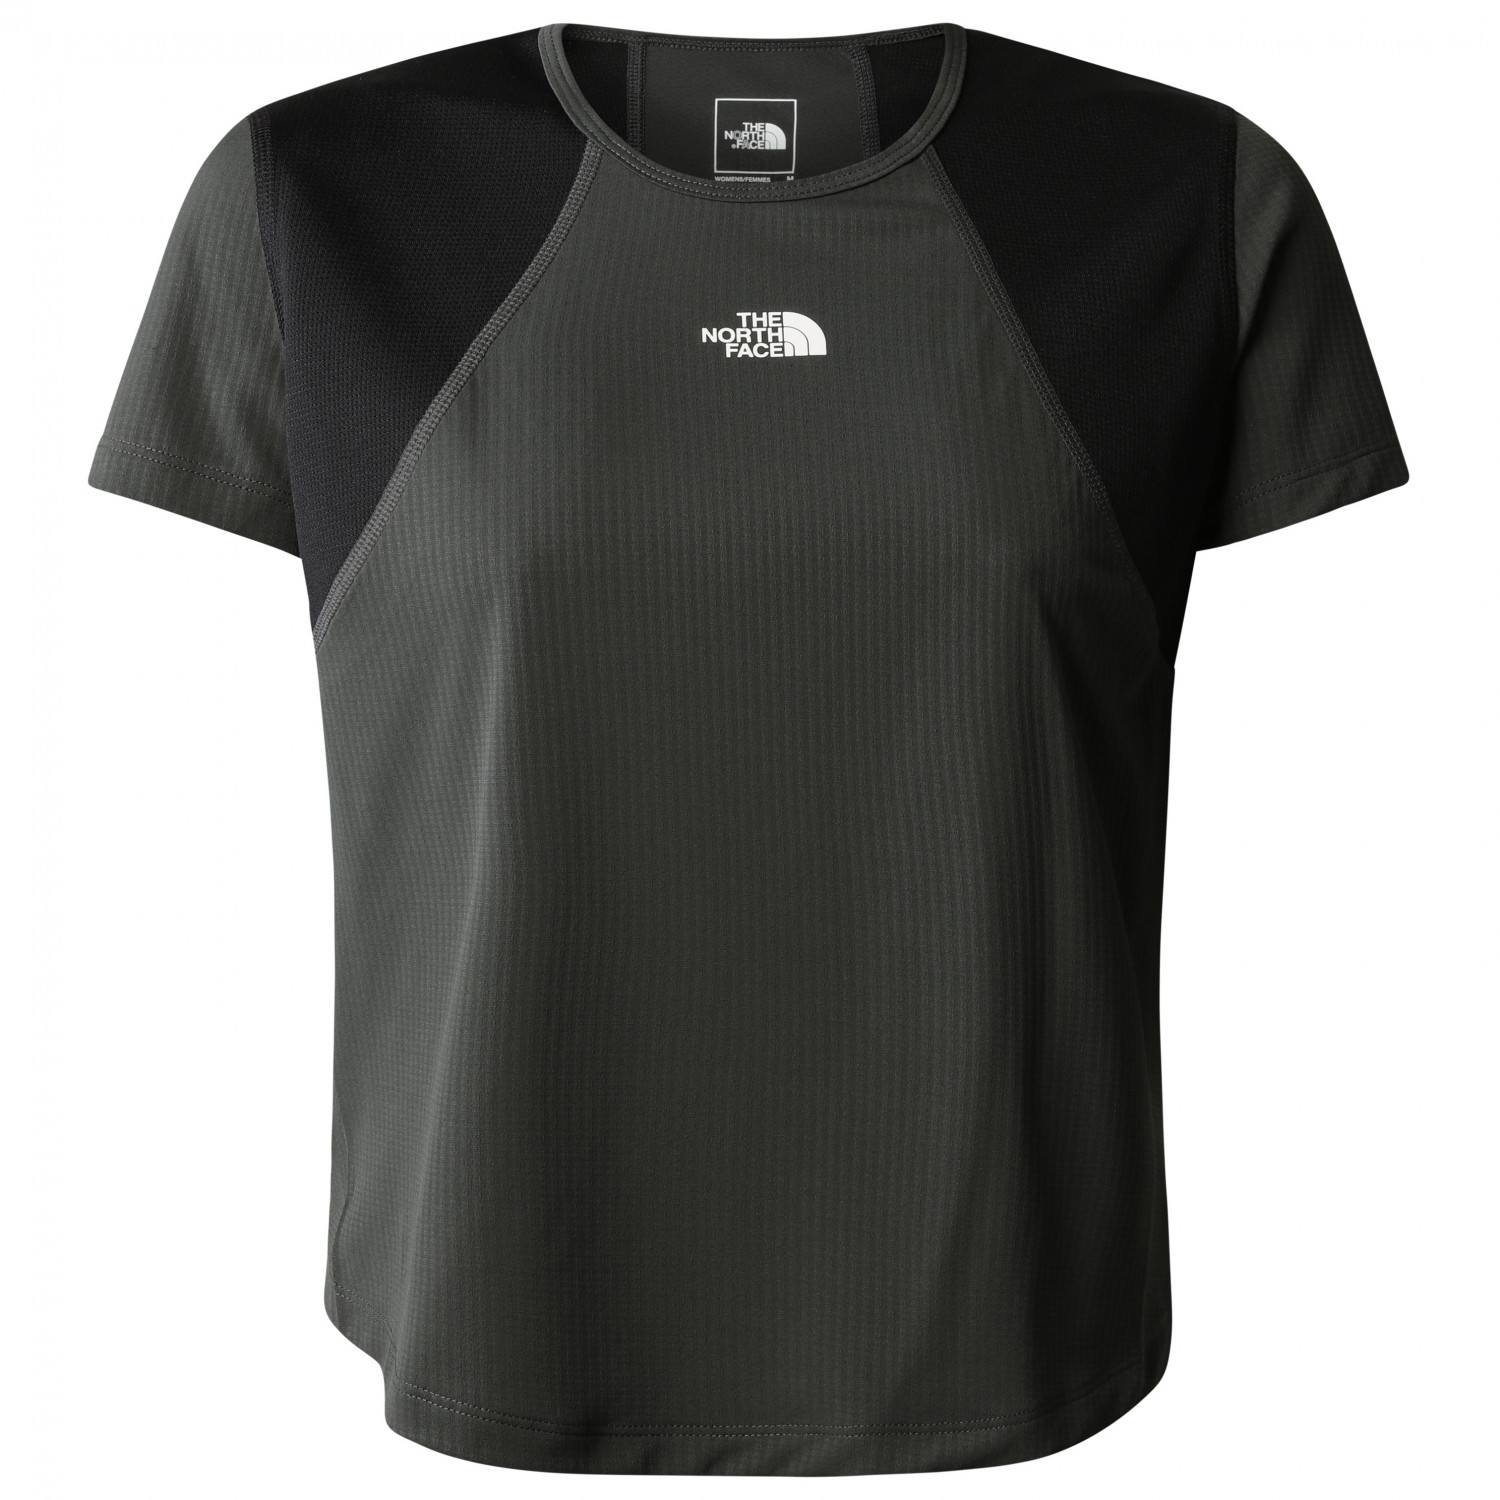 Функциональная рубашка The North Face Women's Lightbright S/S Tee, цвет Asphalt Grey/TNF Black